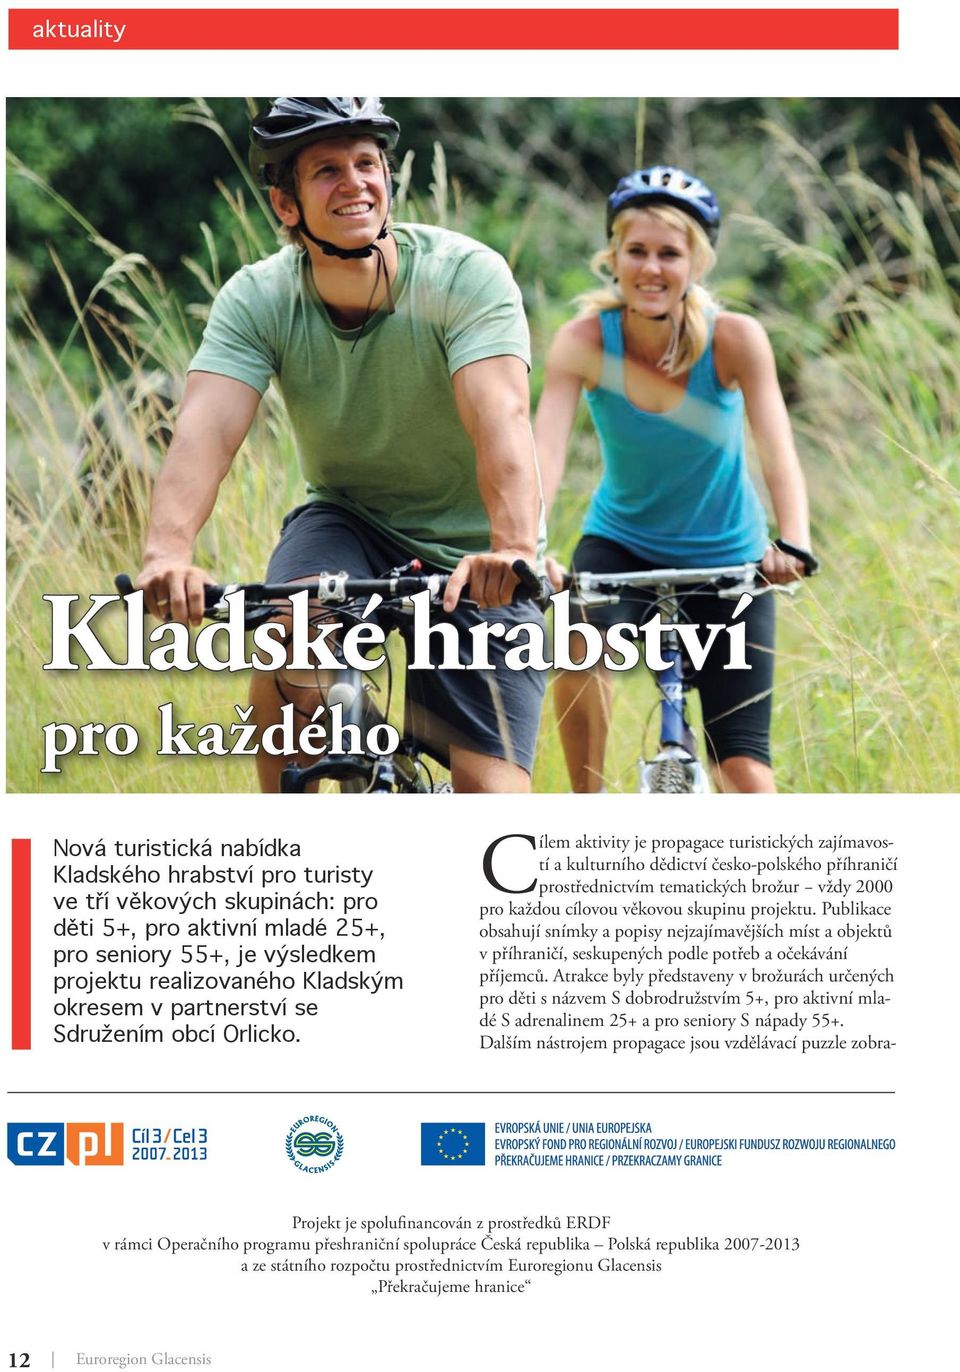 Cílem aktivity je propagace turistických zajímavostí a kulturního dědictví česko-polského příhraničí prostřednictvím tematických brožur vždy 2000 pro každou cílovou věkovou skupinu projektu.